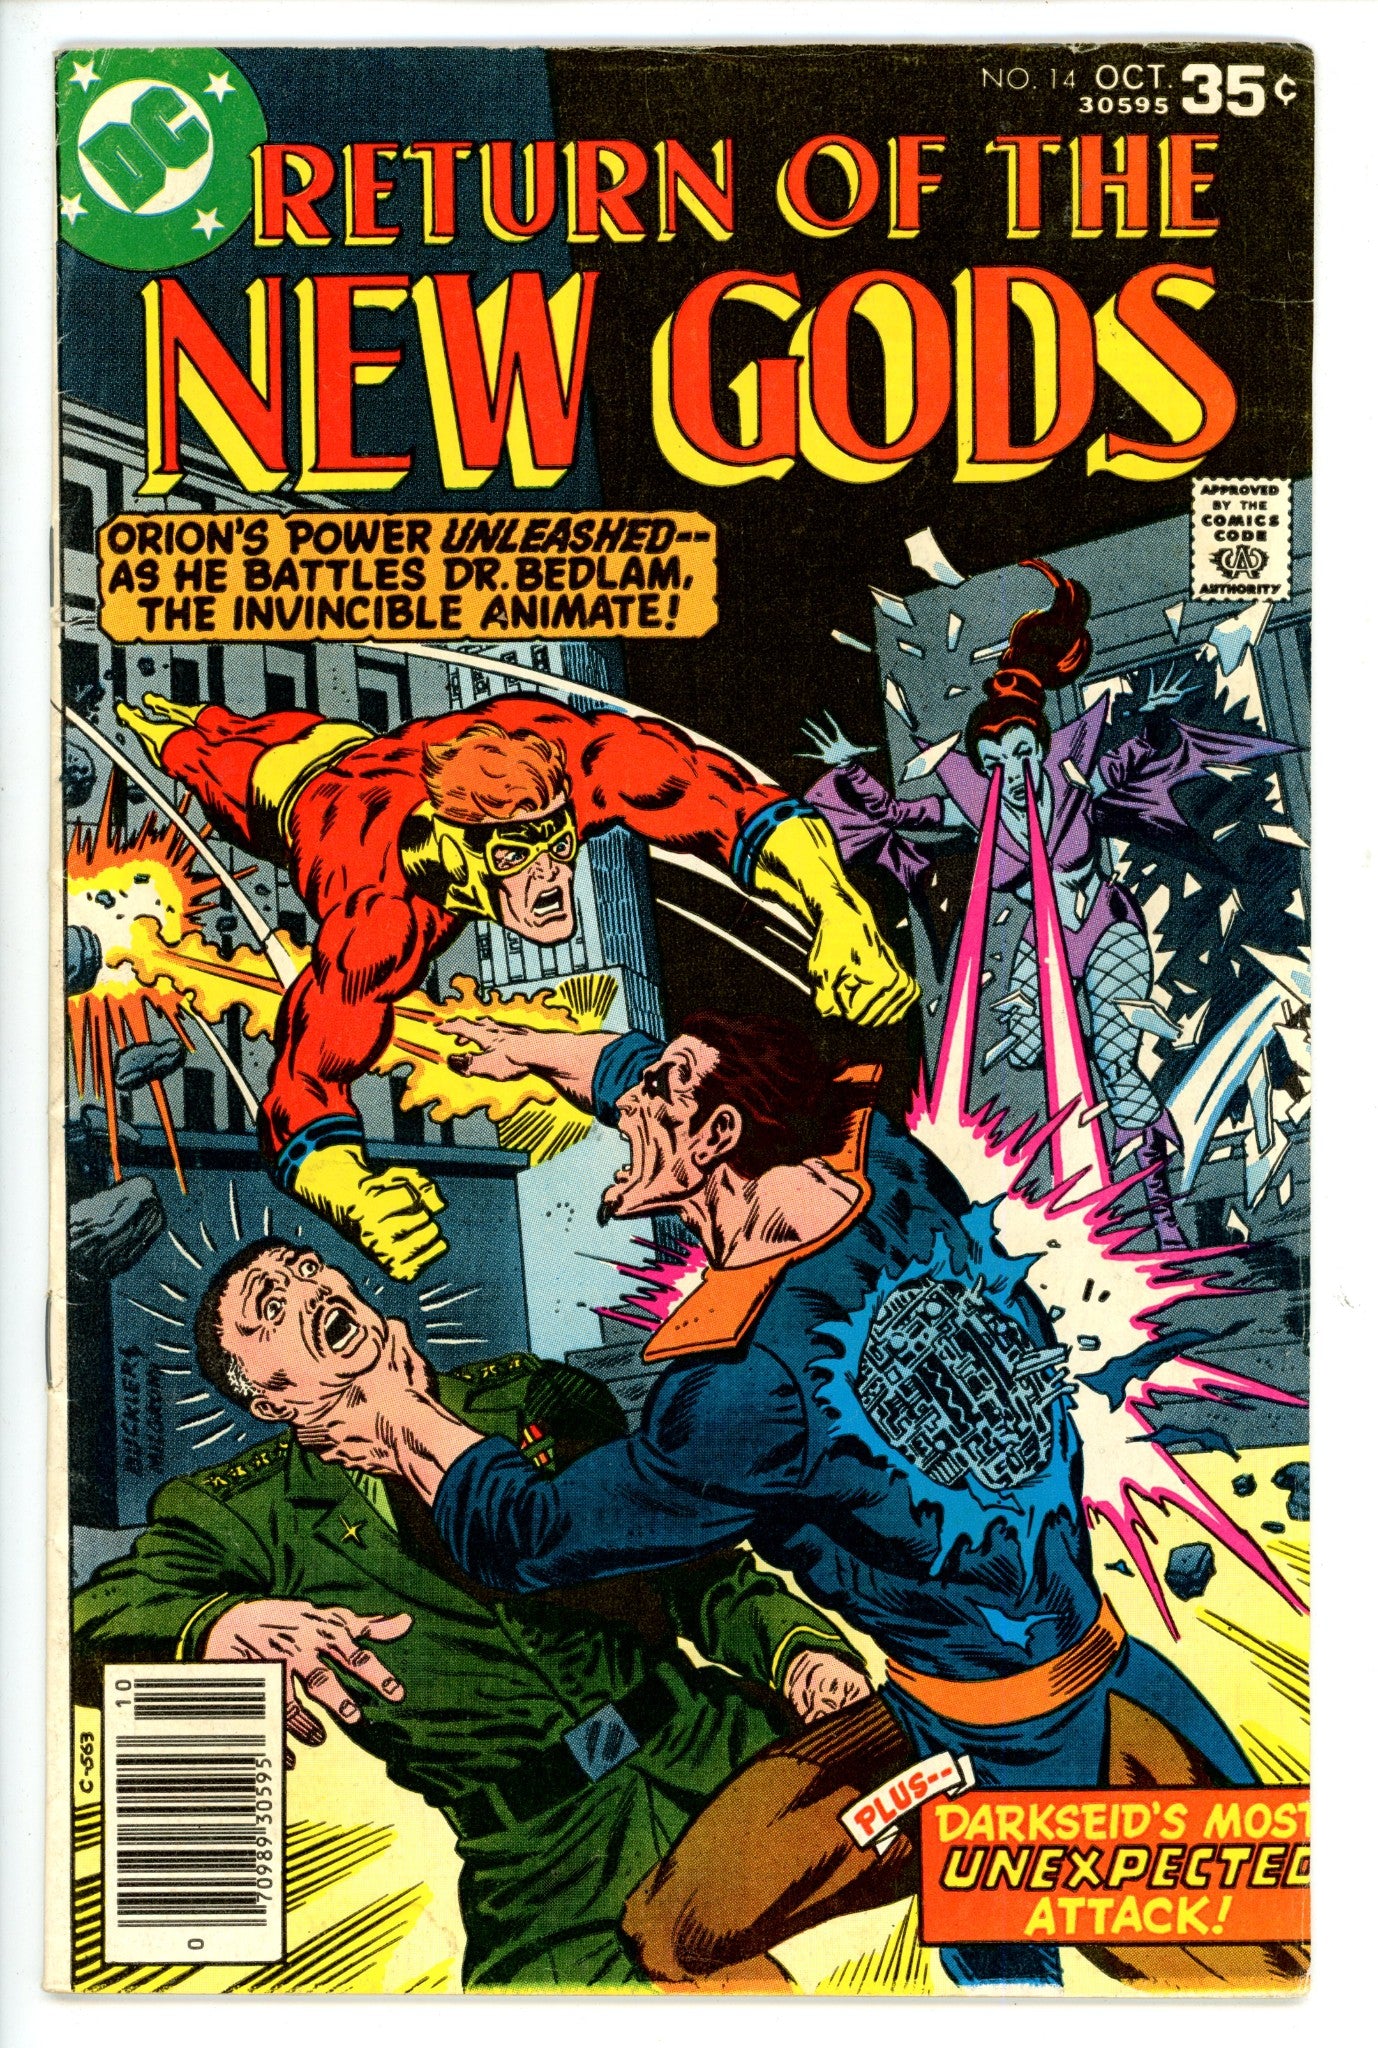 The New Gods Vol 1 14